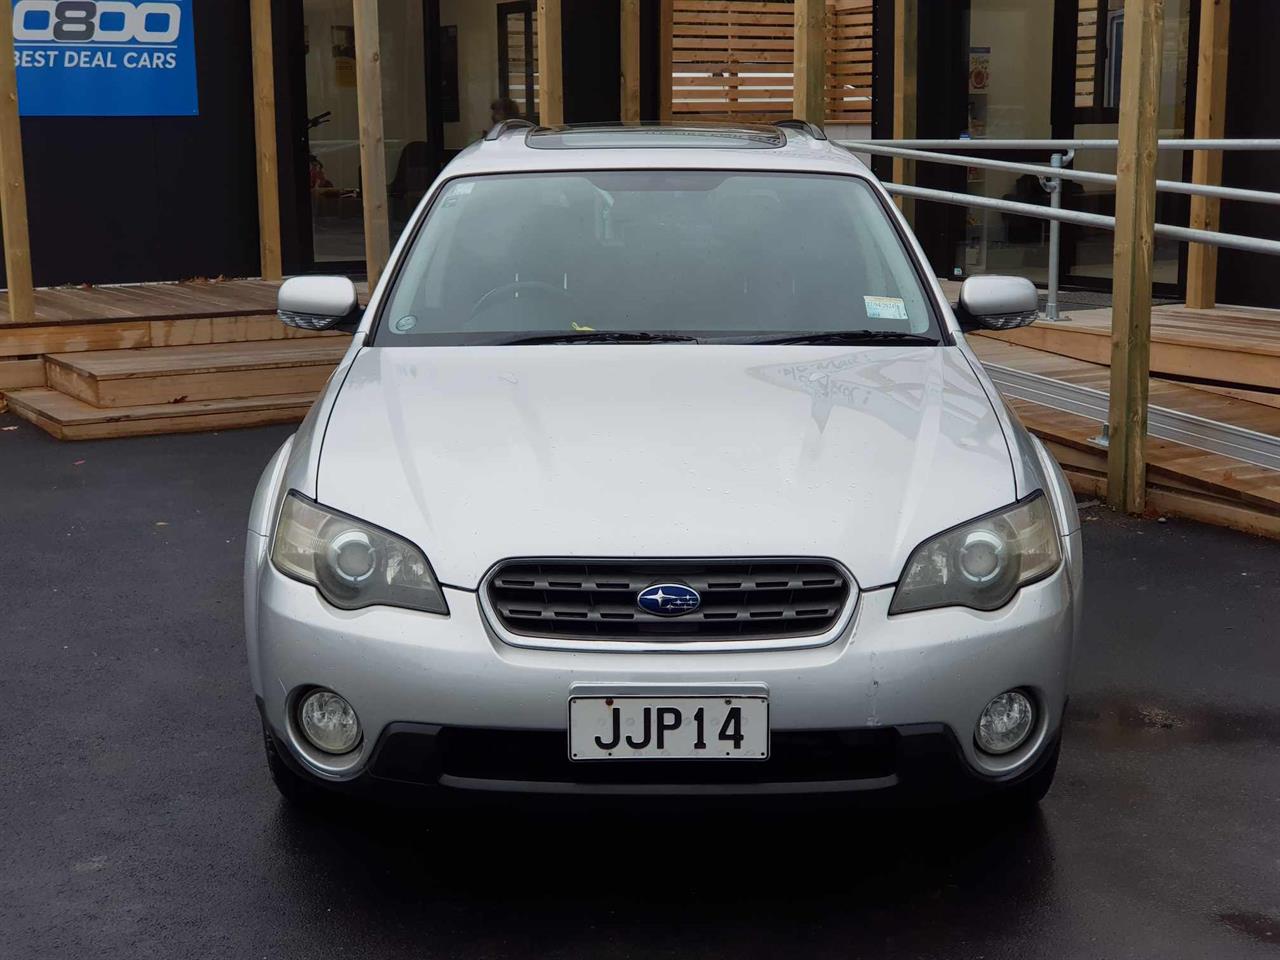 2005 Subaru Outback